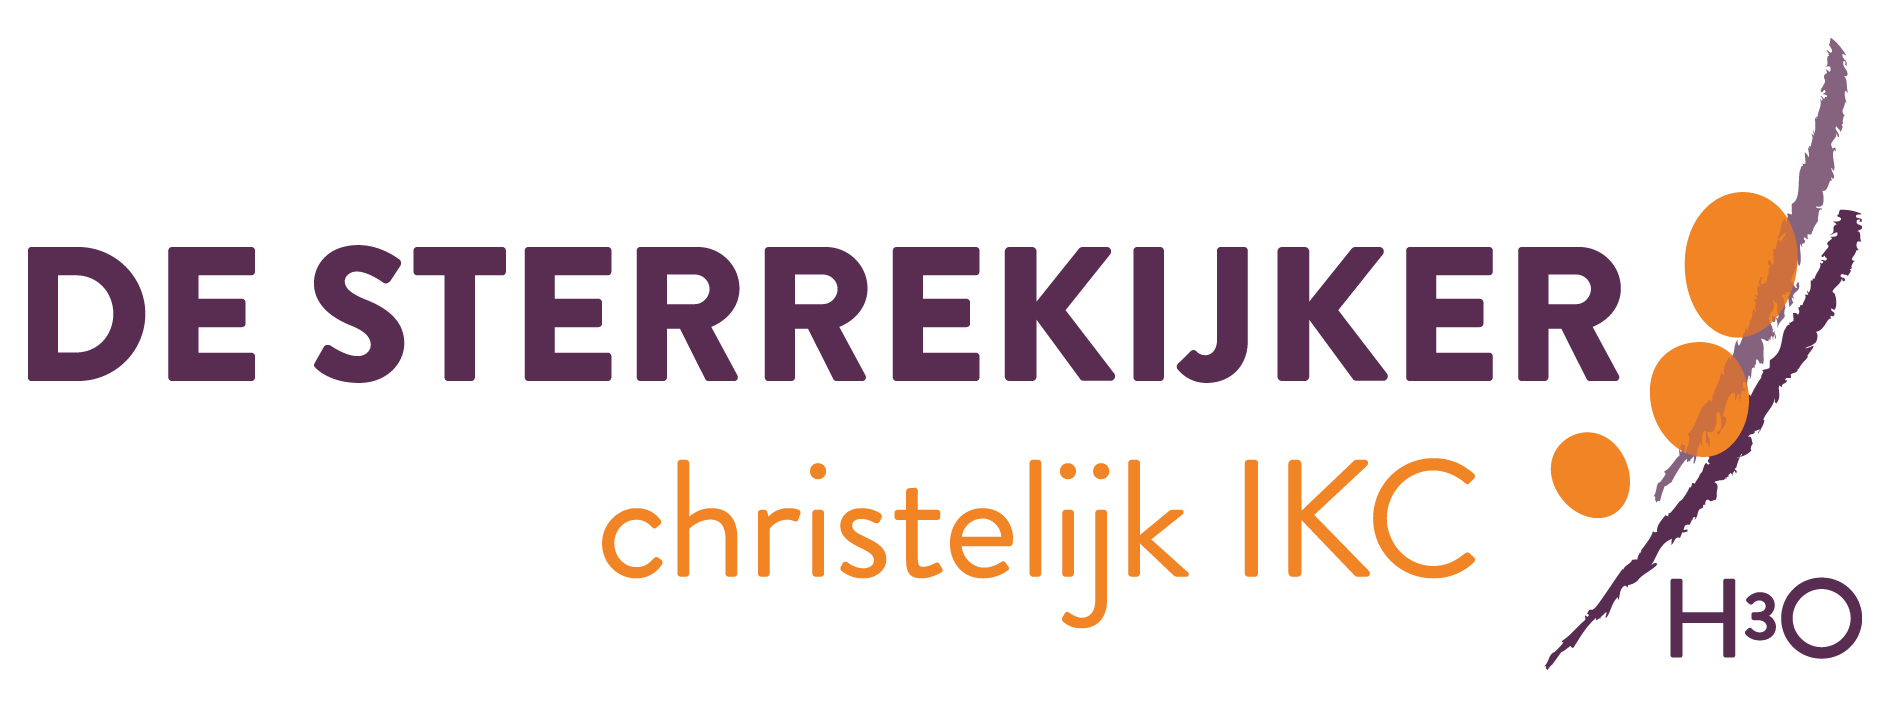 Reünie IKC Sterrekijker logo